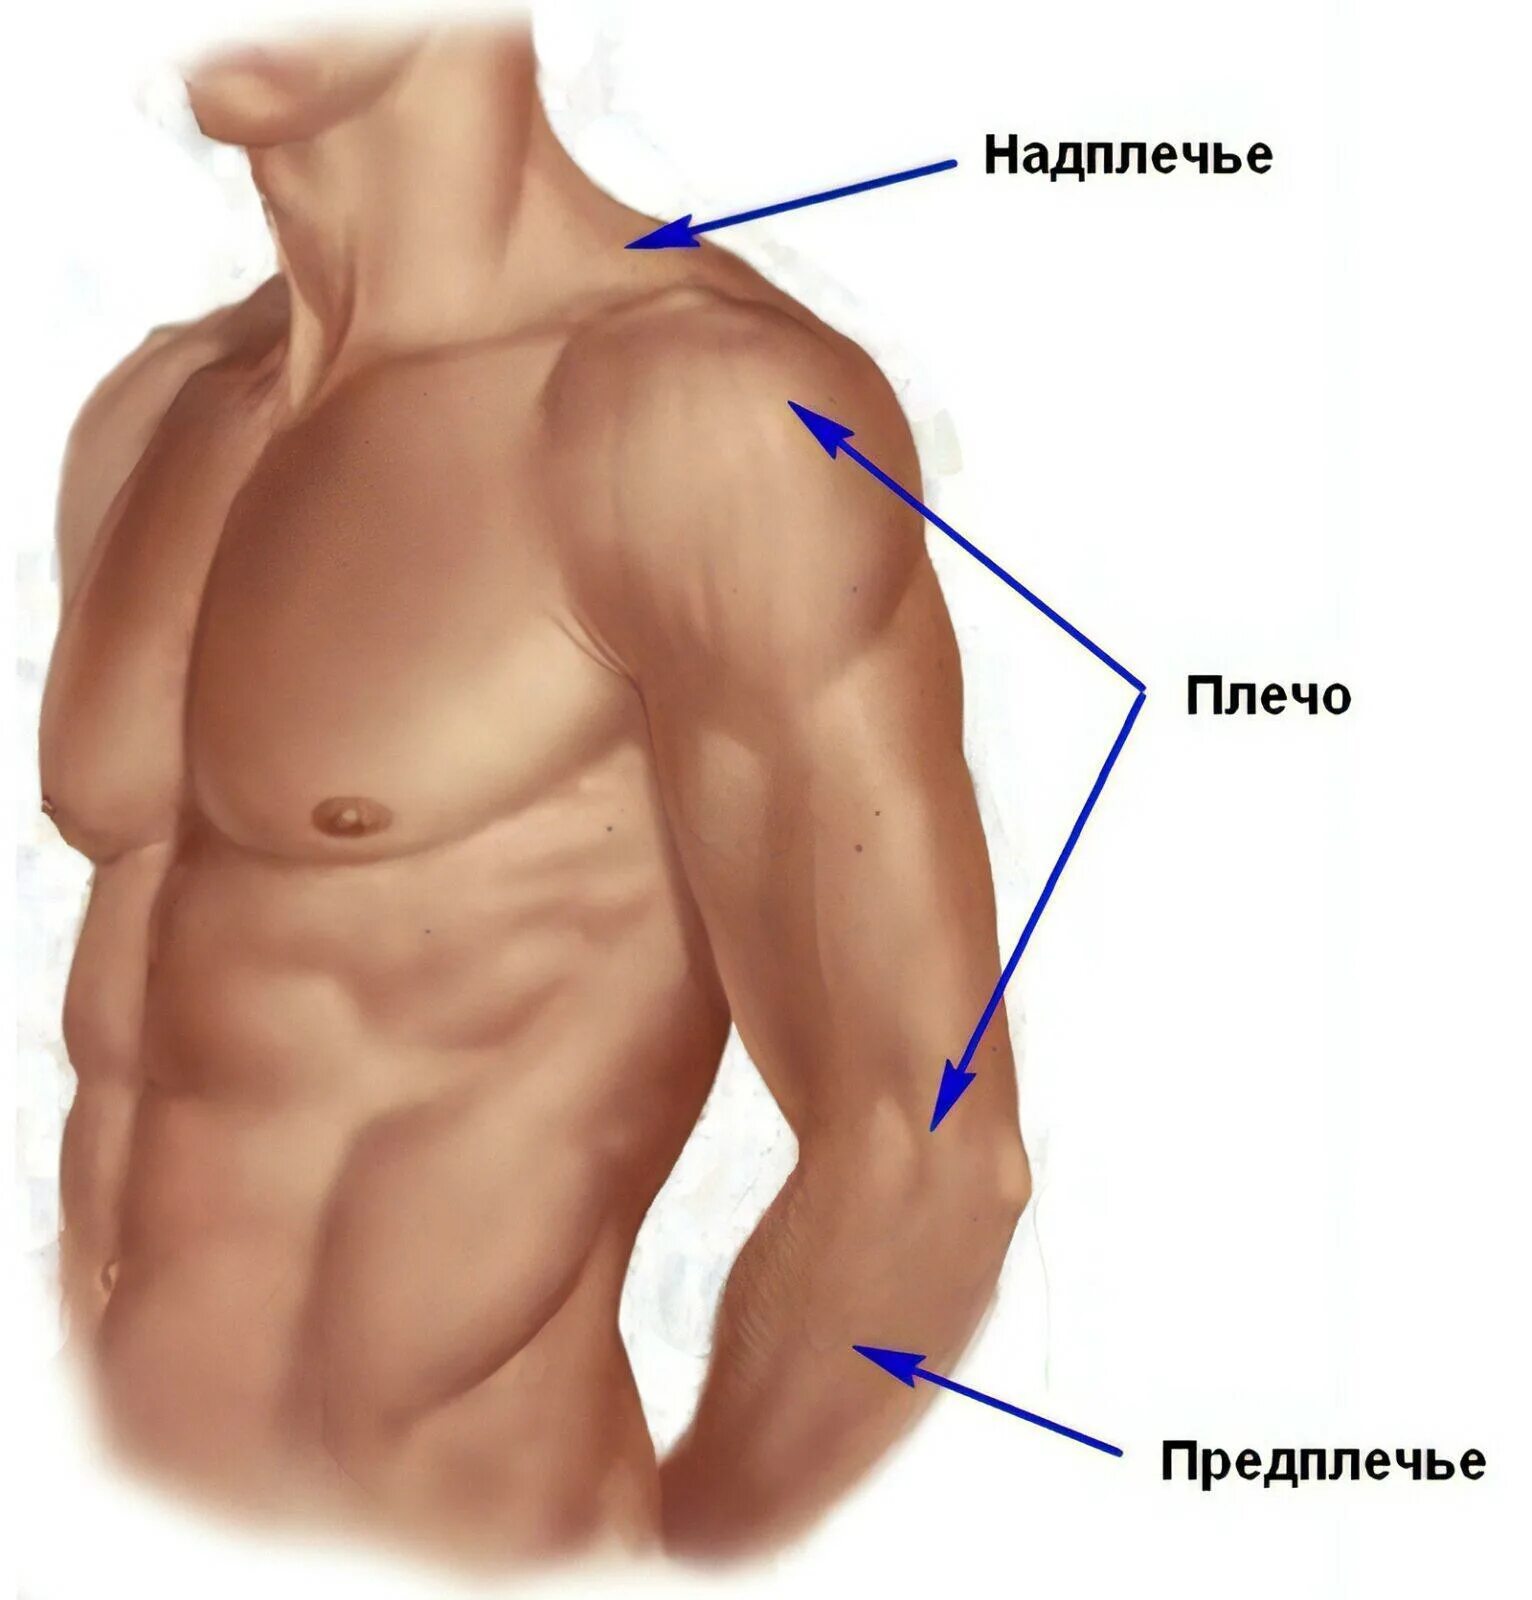 Где находится вправо. Анатомия плечо и предплечье. Где плечо а где предплечье у человека. Анатомия предплечья человека. Части руки человека названия.